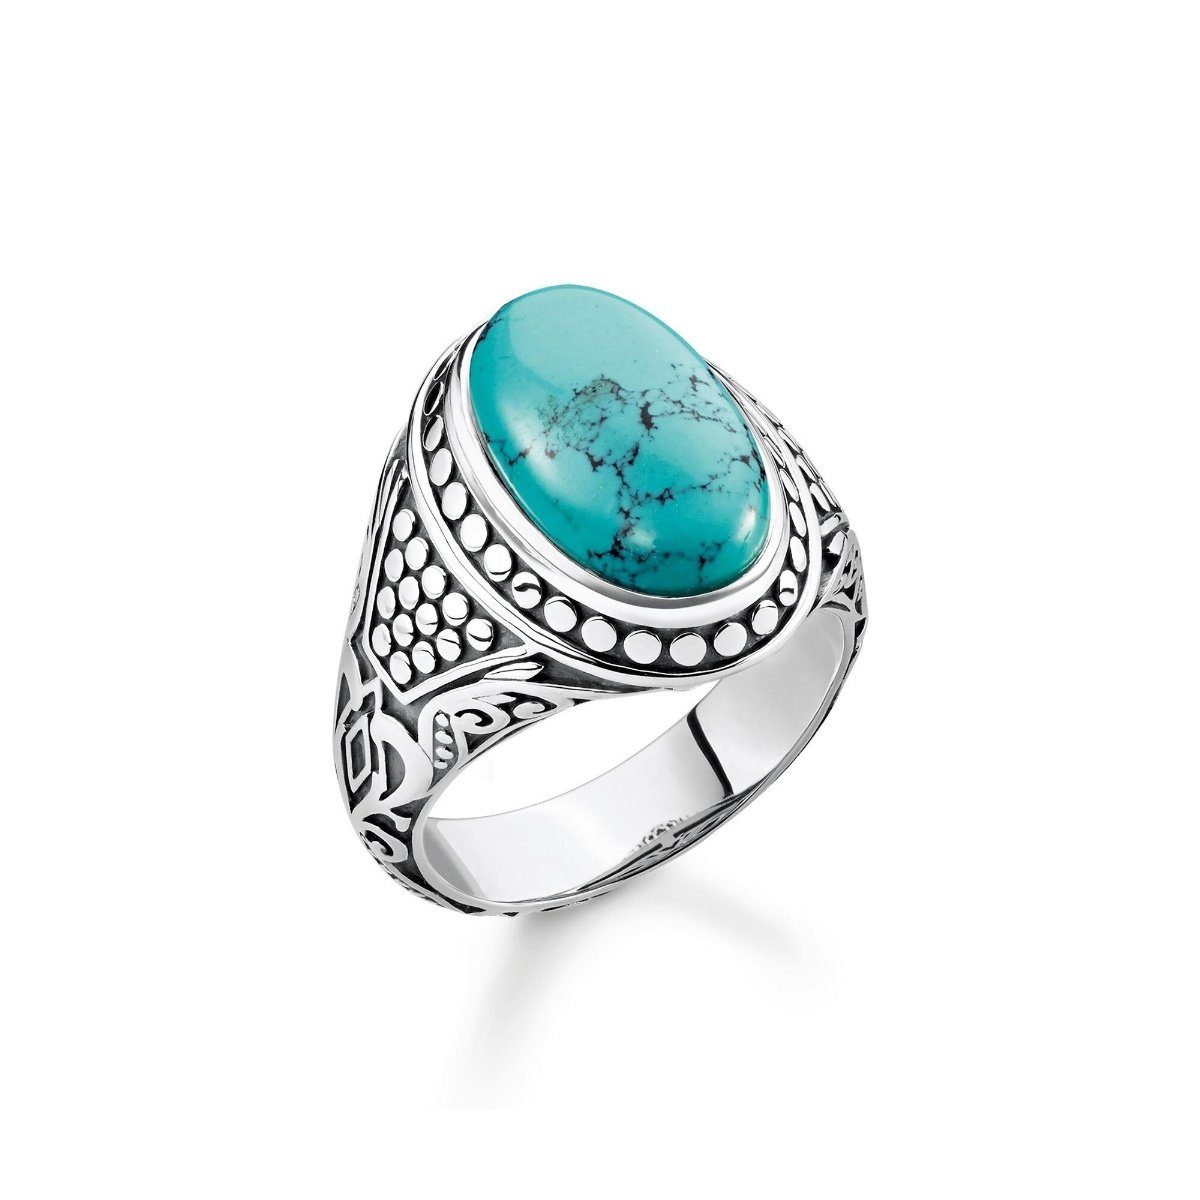 THOMAS SABO Silberring Ring türkis online kaufen | OTTO